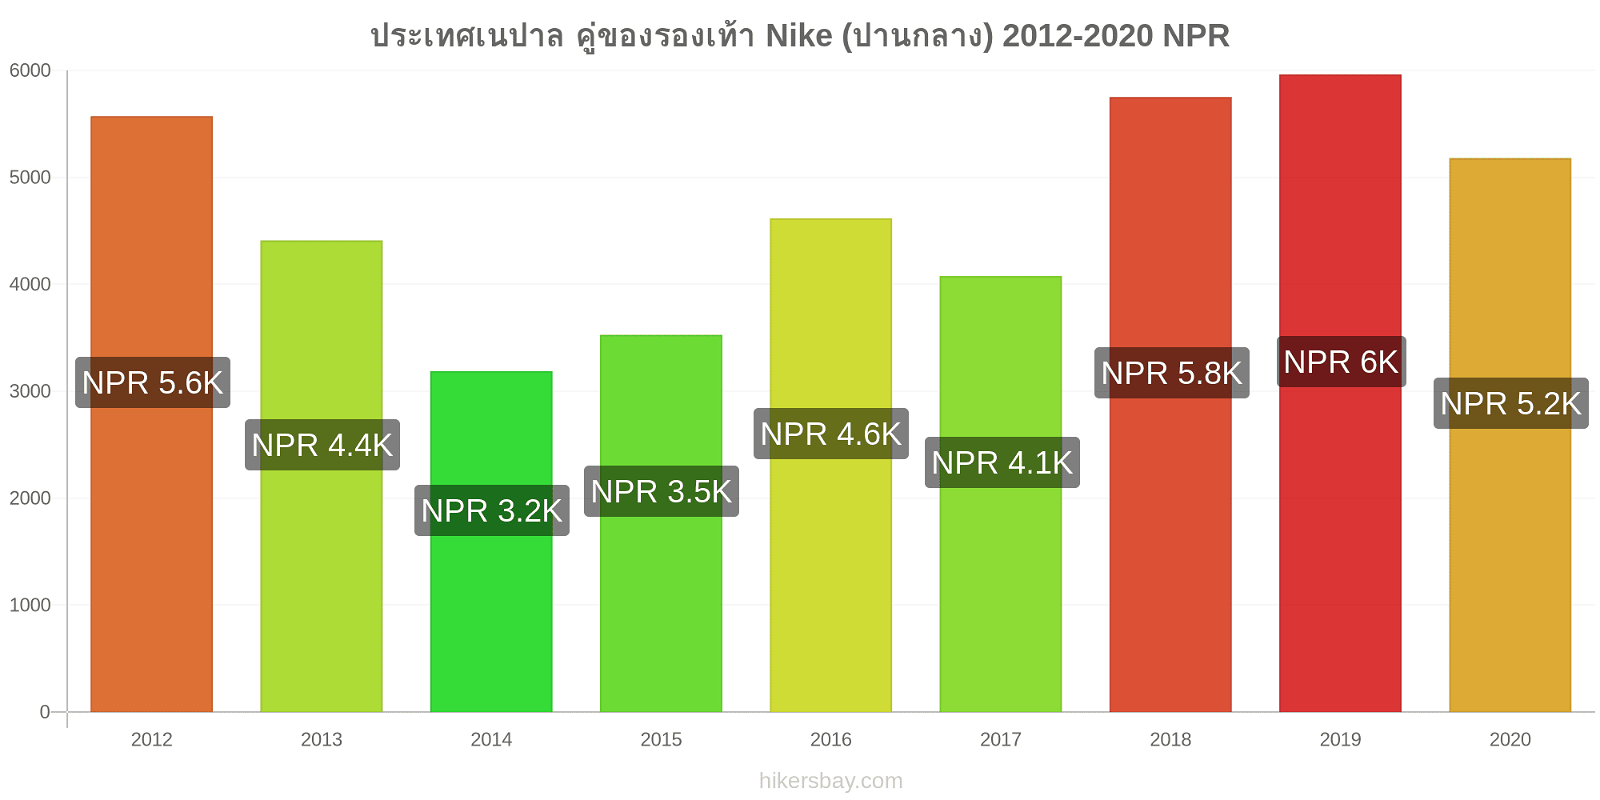 ประเทศเนปาล การเปลี่ยนแปลงราคา คู่ของรองเท้า Nike (ปานกลาง) hikersbay.com